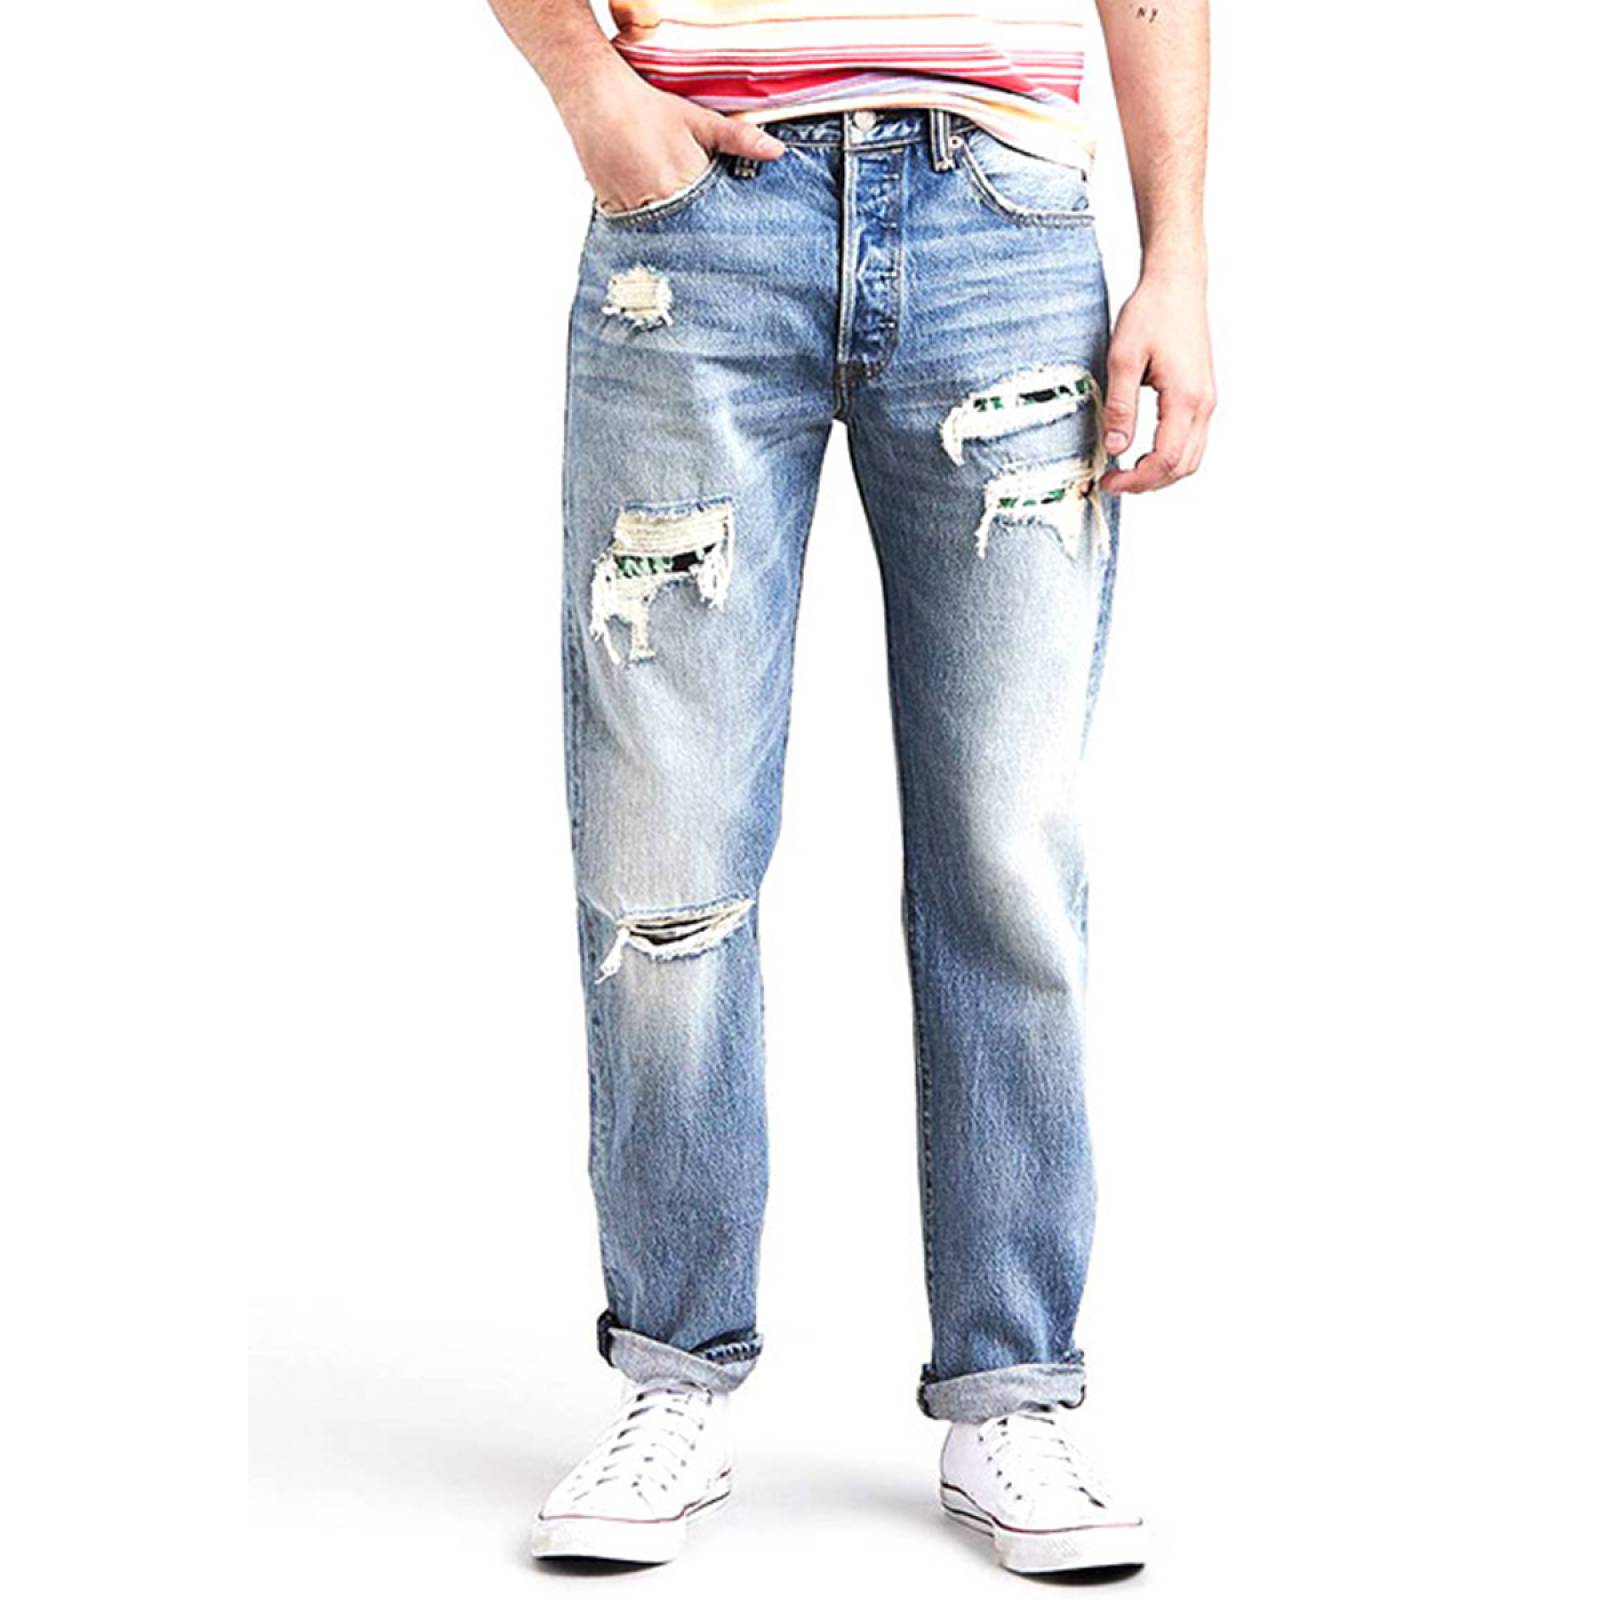 Jeans 501 Original Fit para Caballero